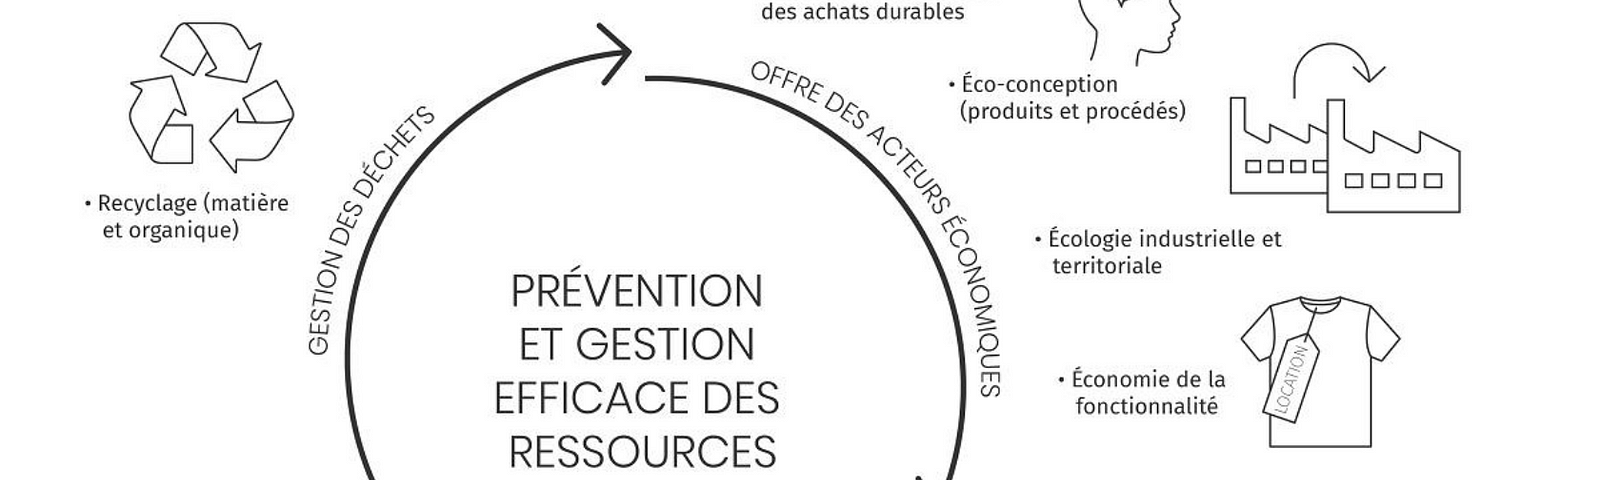 schéma de la prévention et gestion efficace des ressources